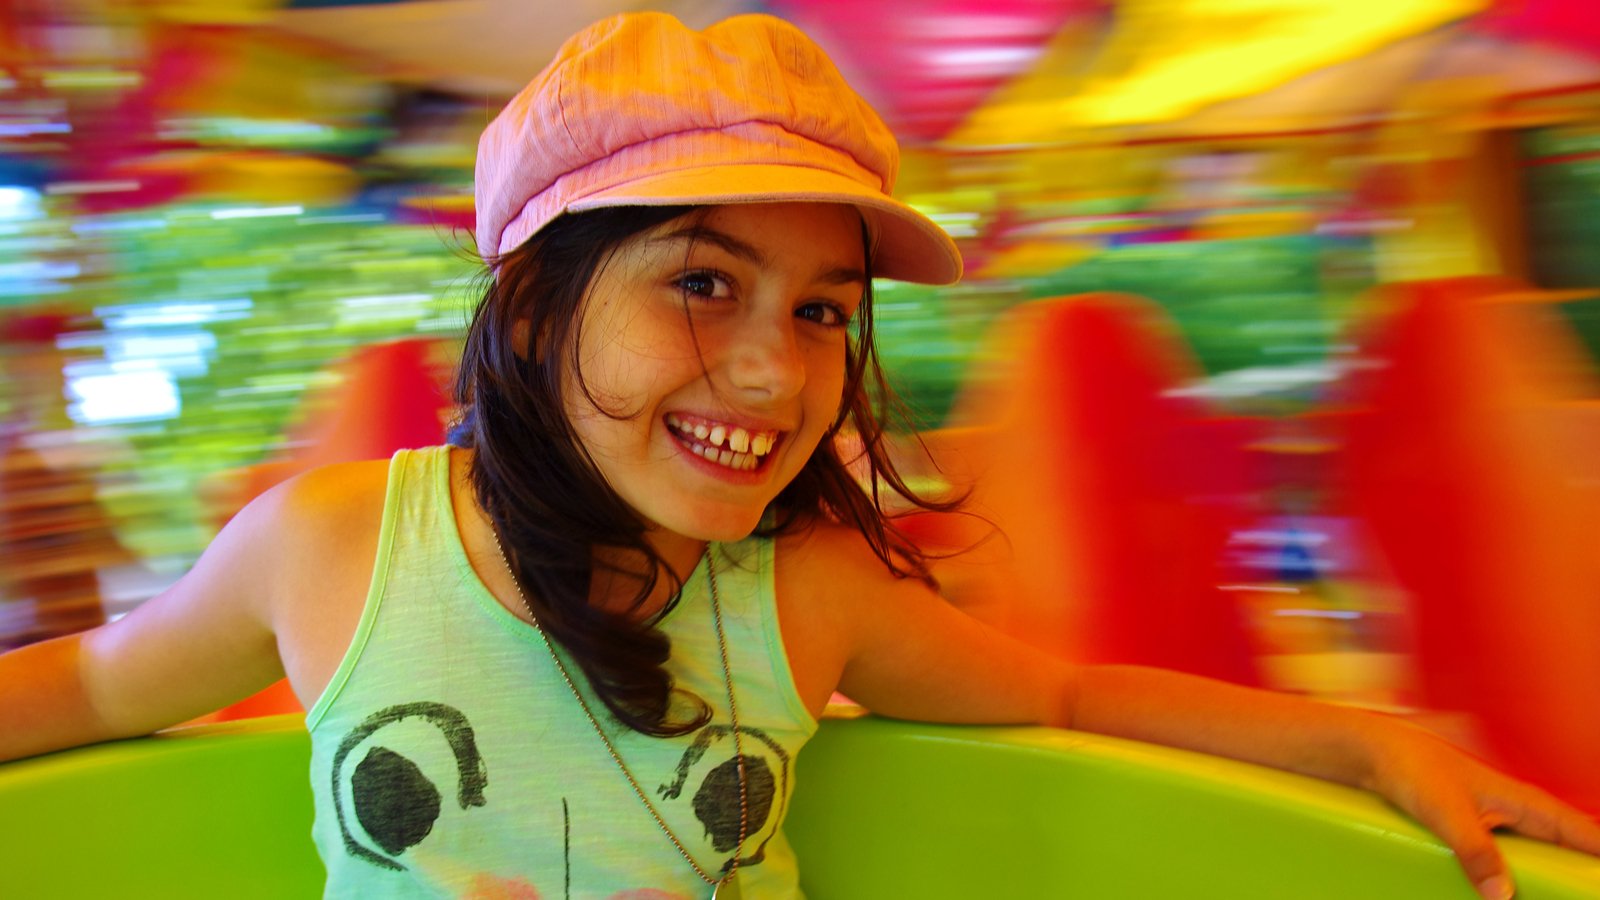 Little girl having fun in a carousel